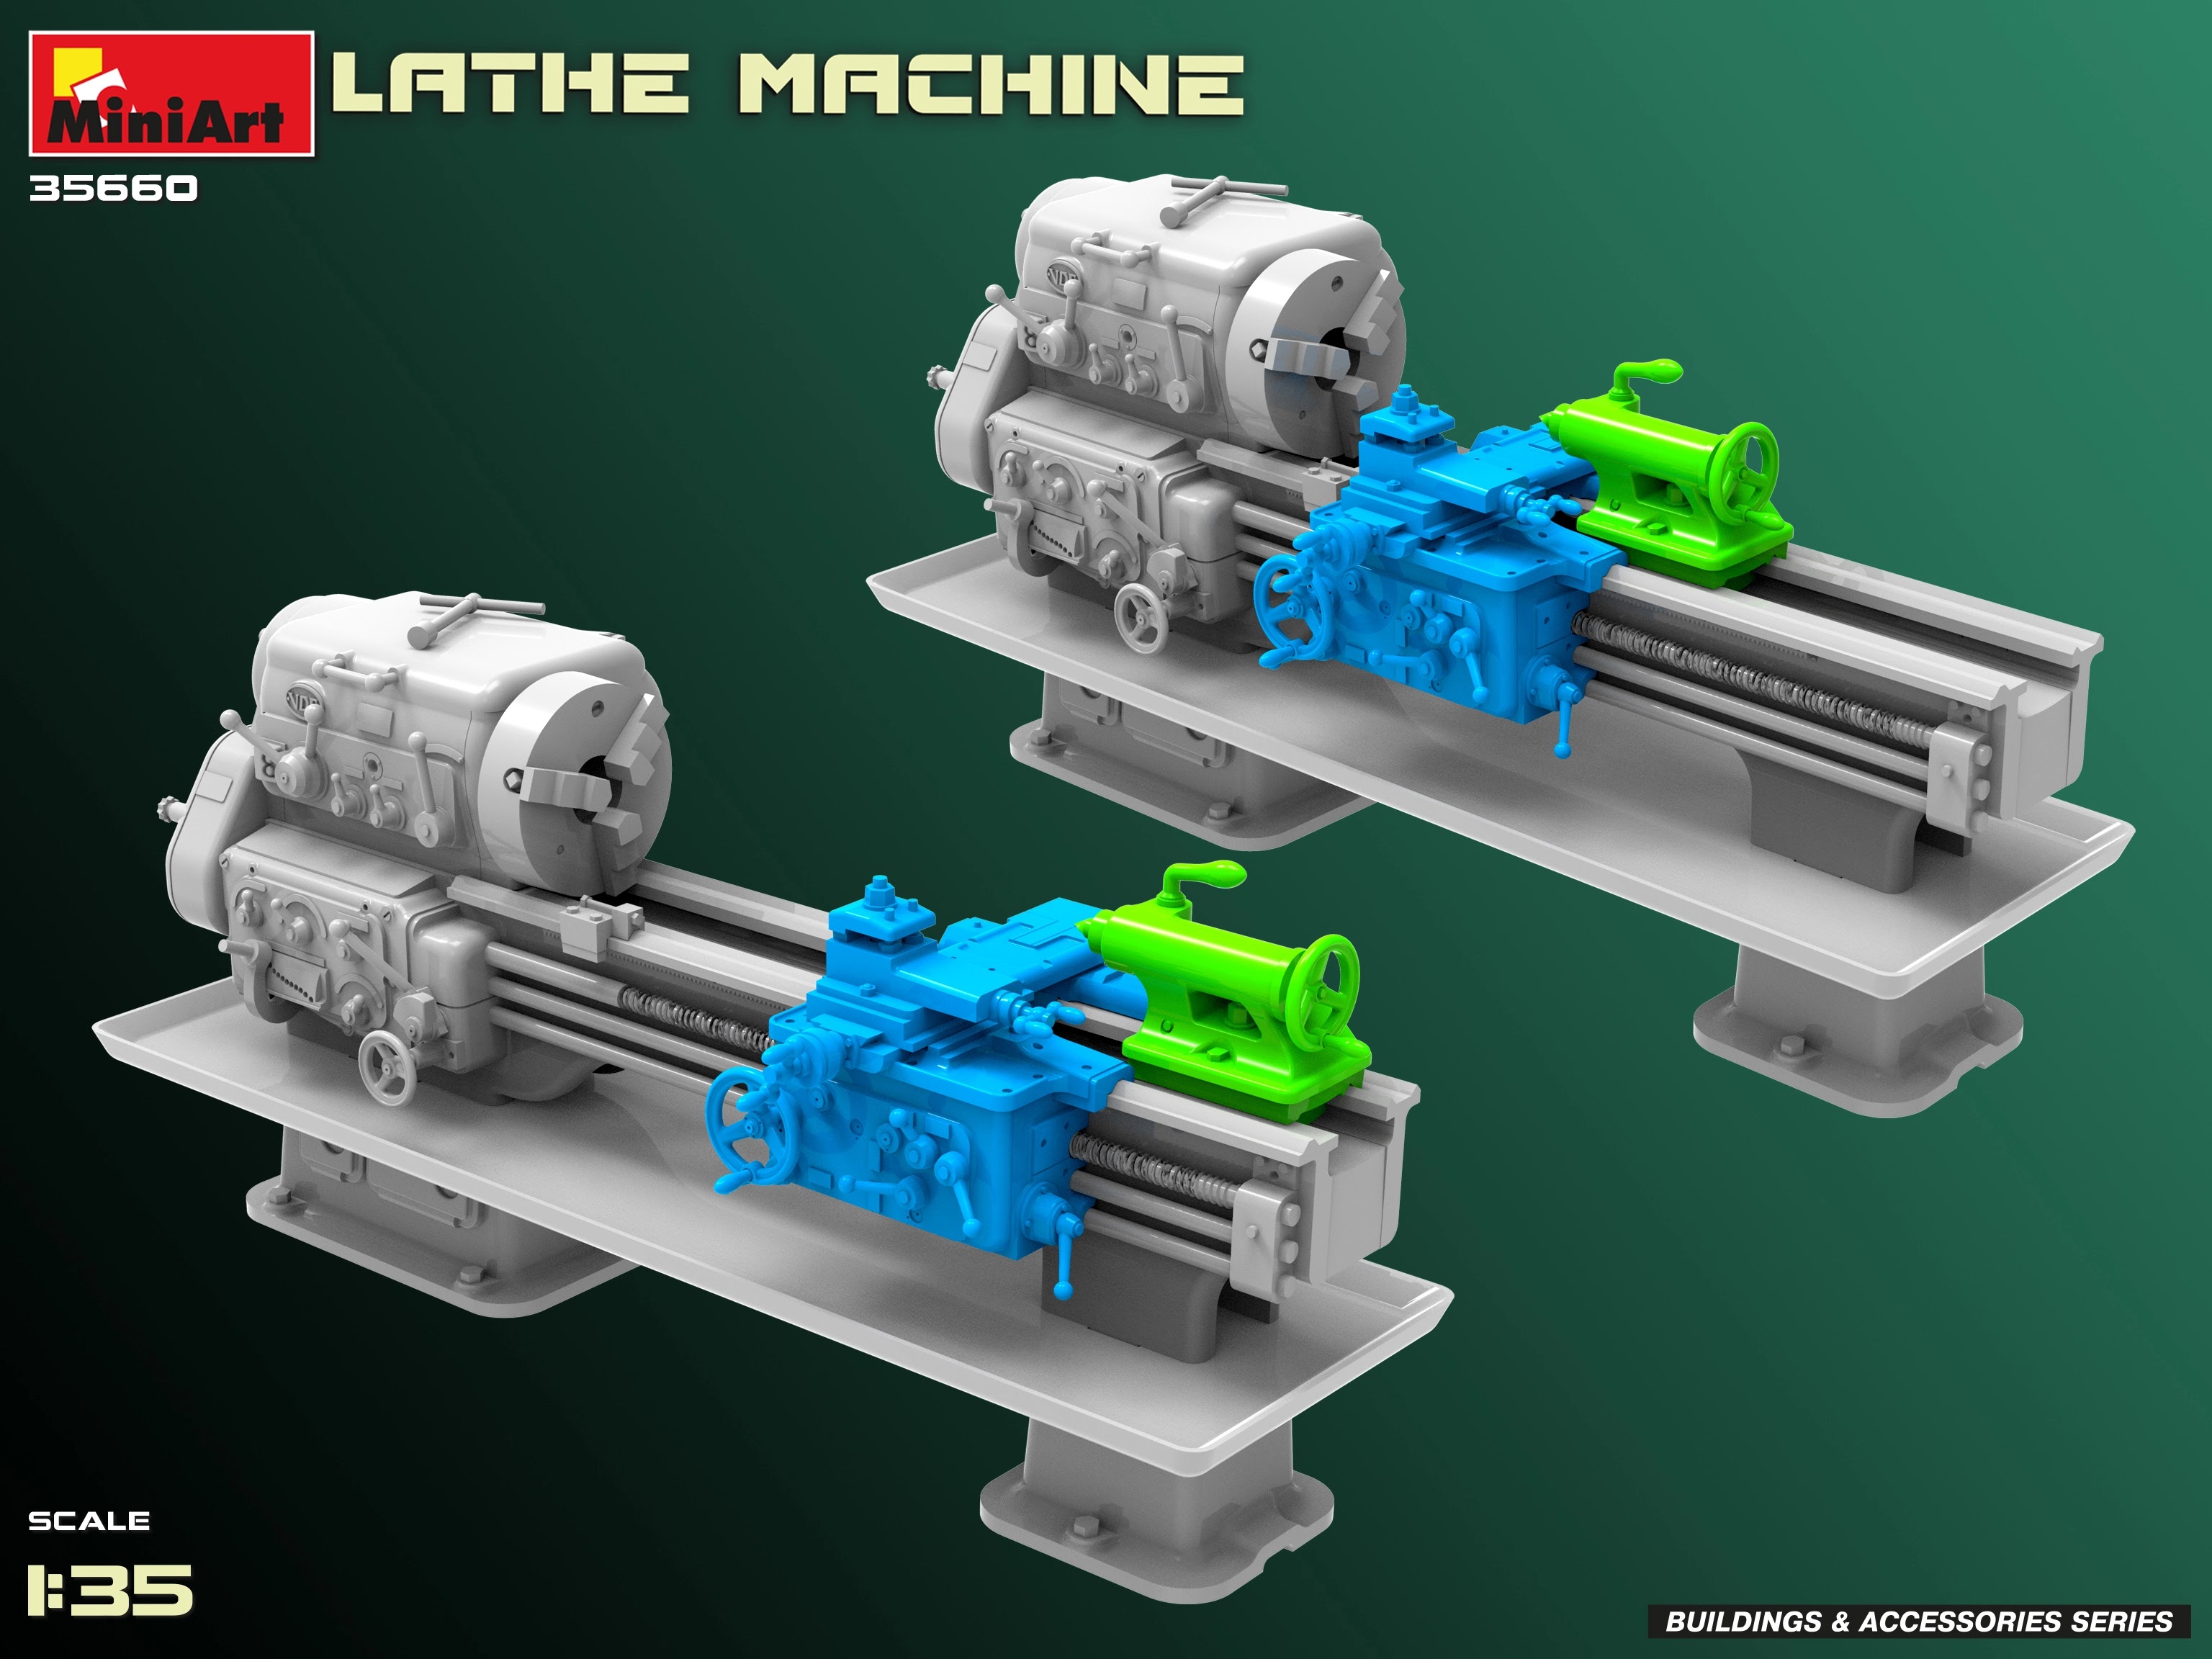 MiniArt Lathe Machine in 35th Scale – Hobbyzero